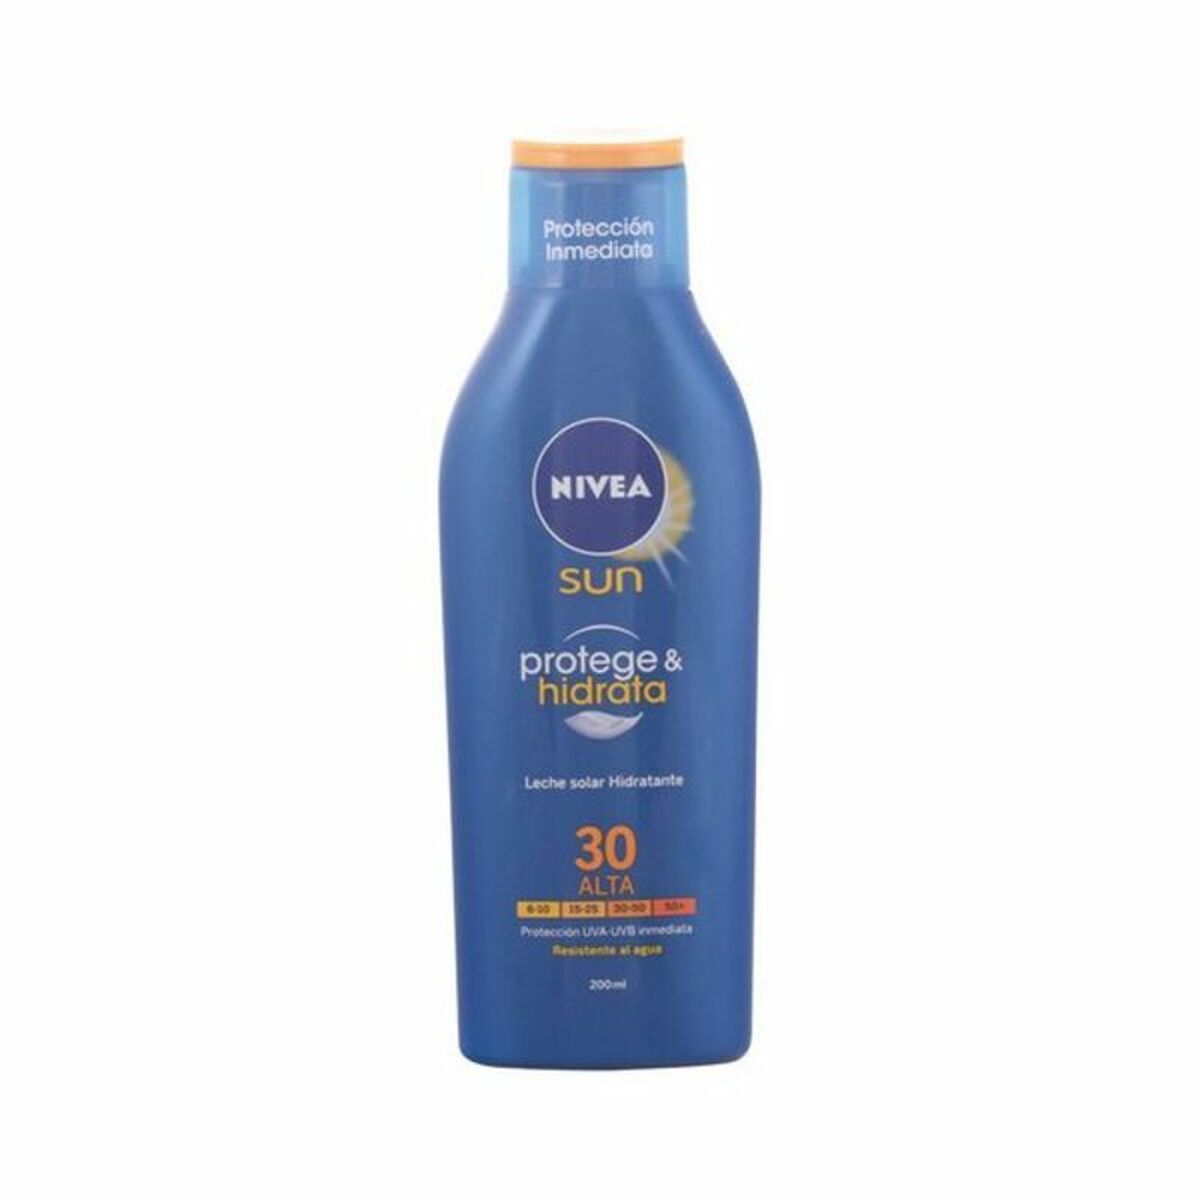 Sun Milk Spf 30 Nivea 8244 30 (400 ml)